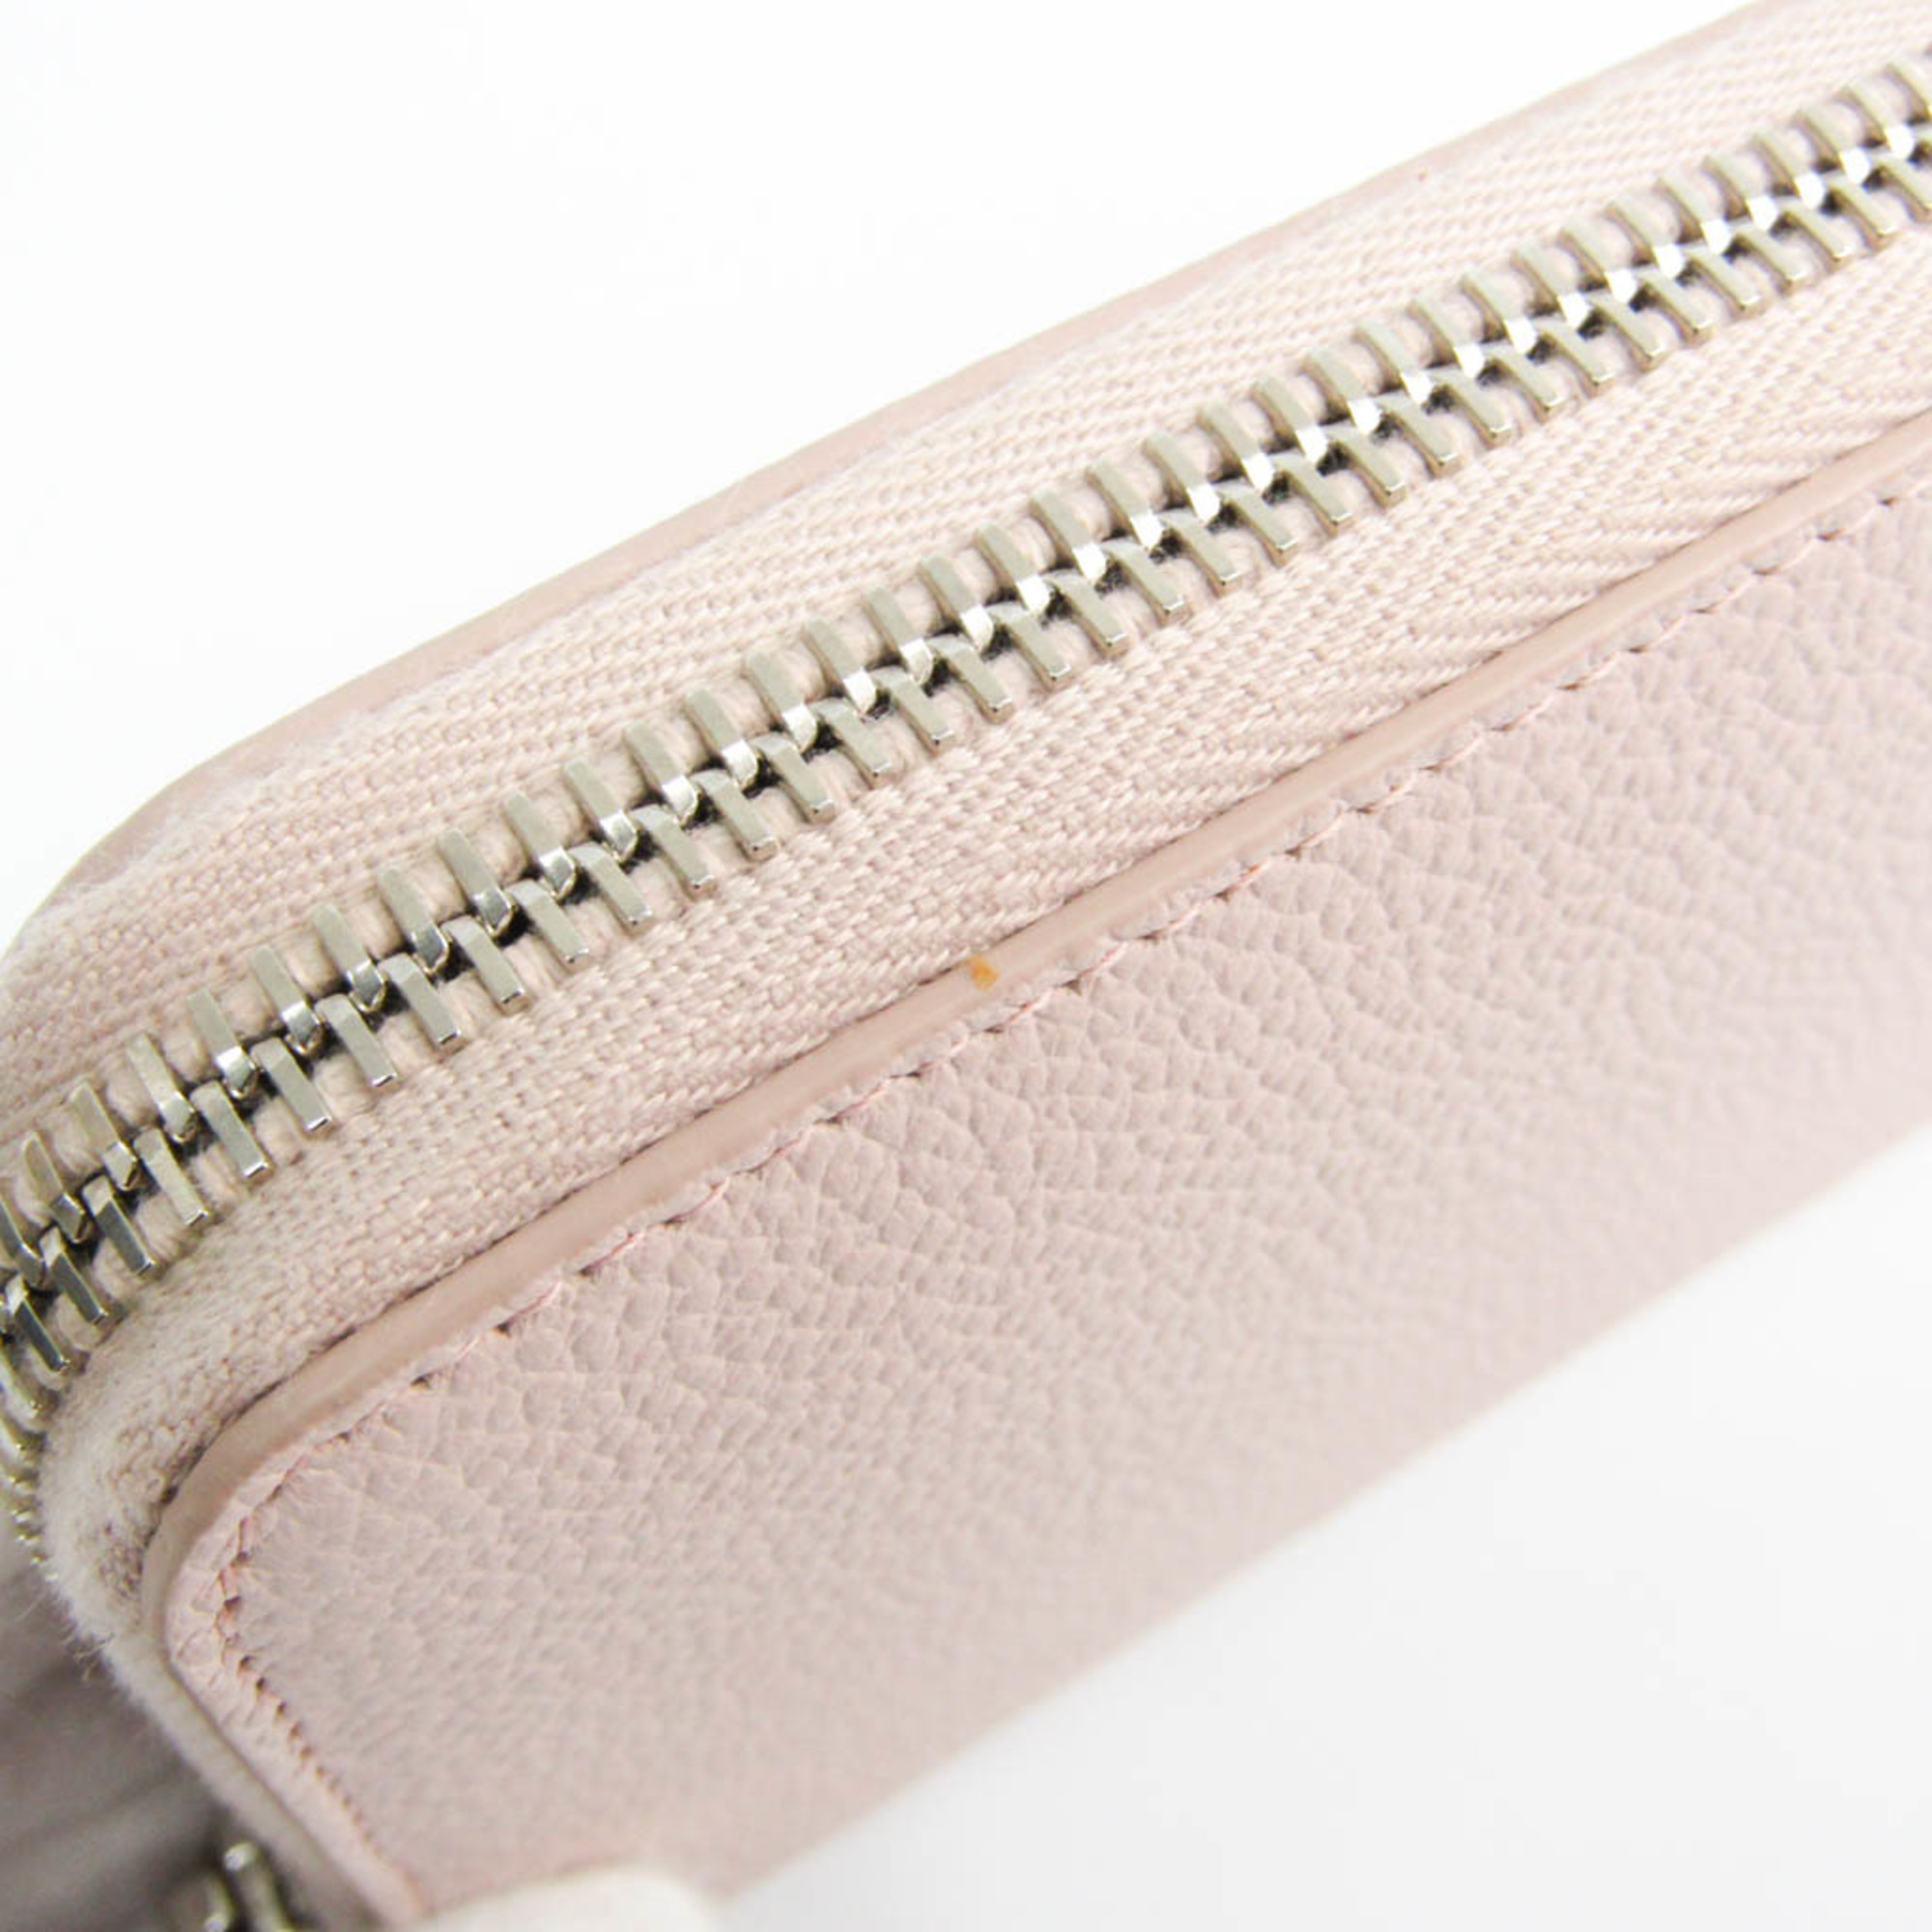 Saint Laurent 414680 Women's  Calfskin Long Wallet (bi-fold) Light Pink